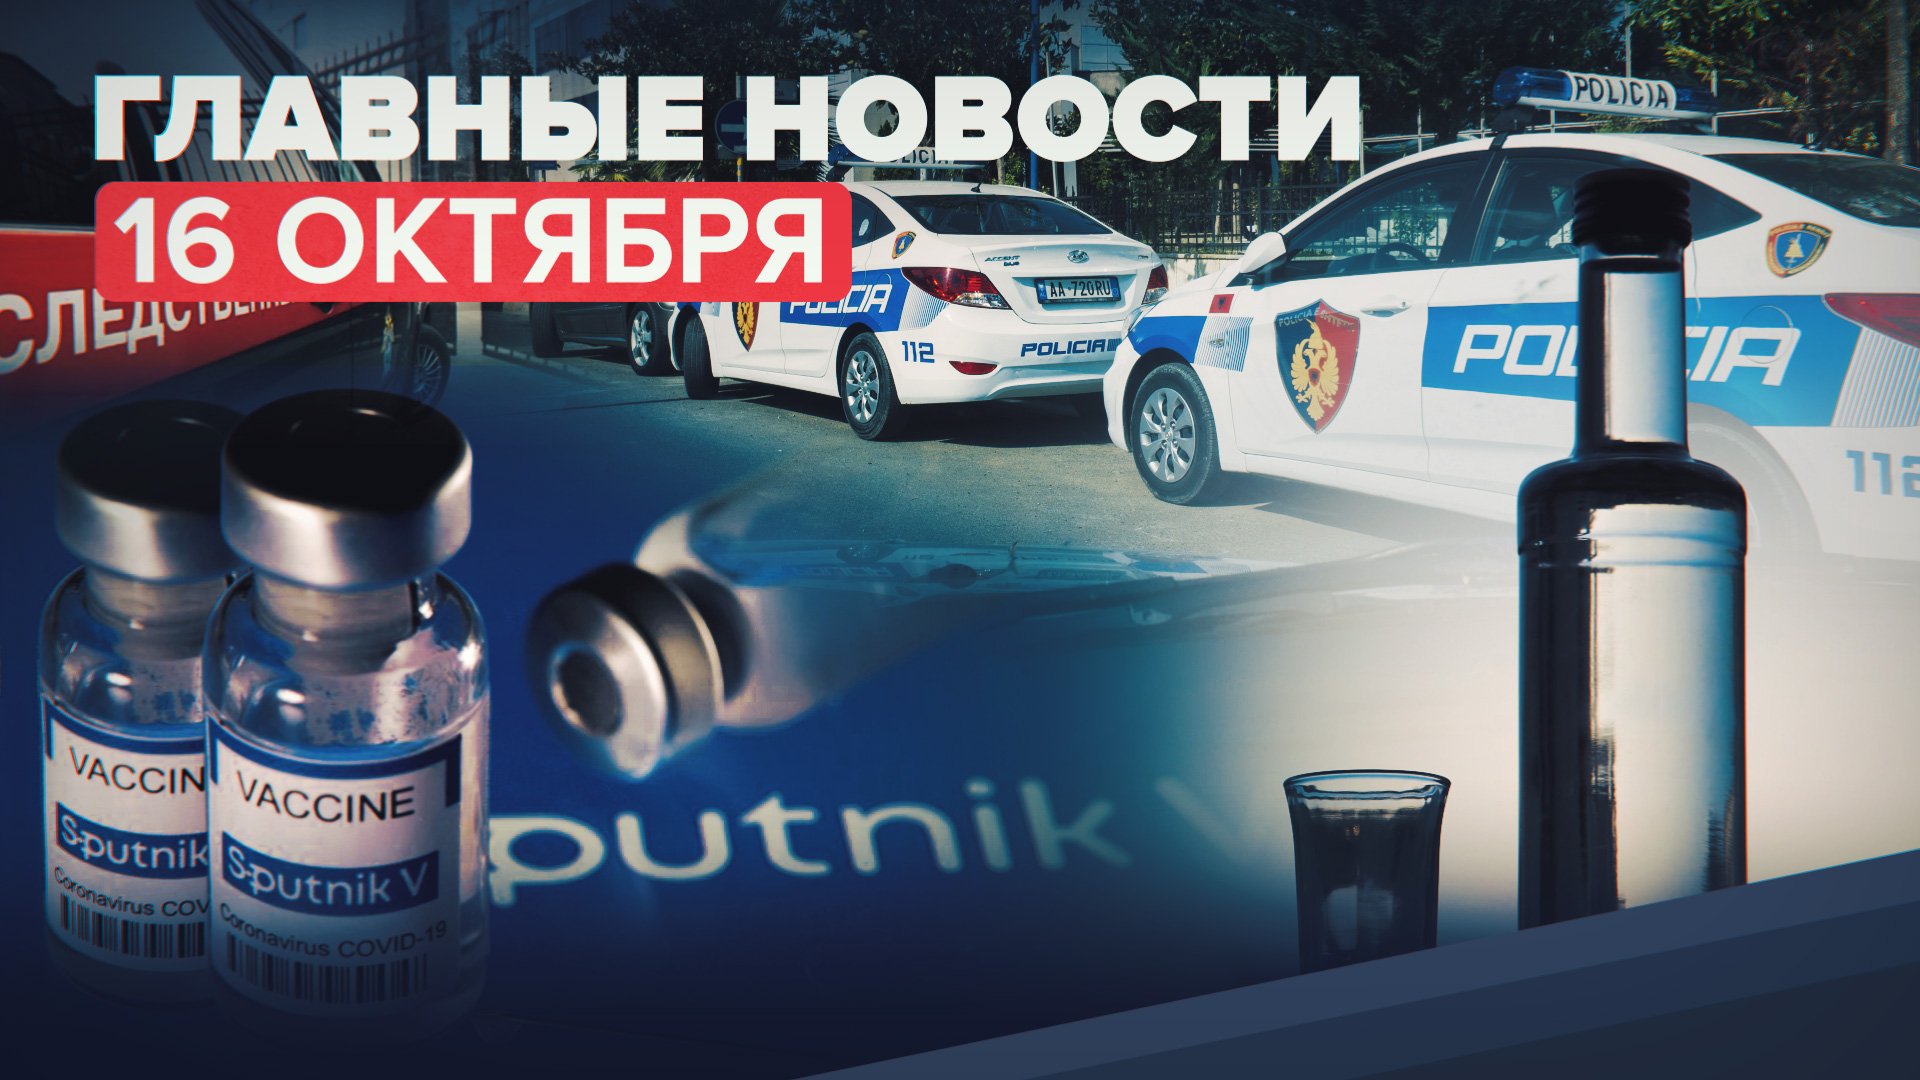 Новости дня — 16 октября: отравление алкоголем в Екатеринбурге, статистика COVID-19